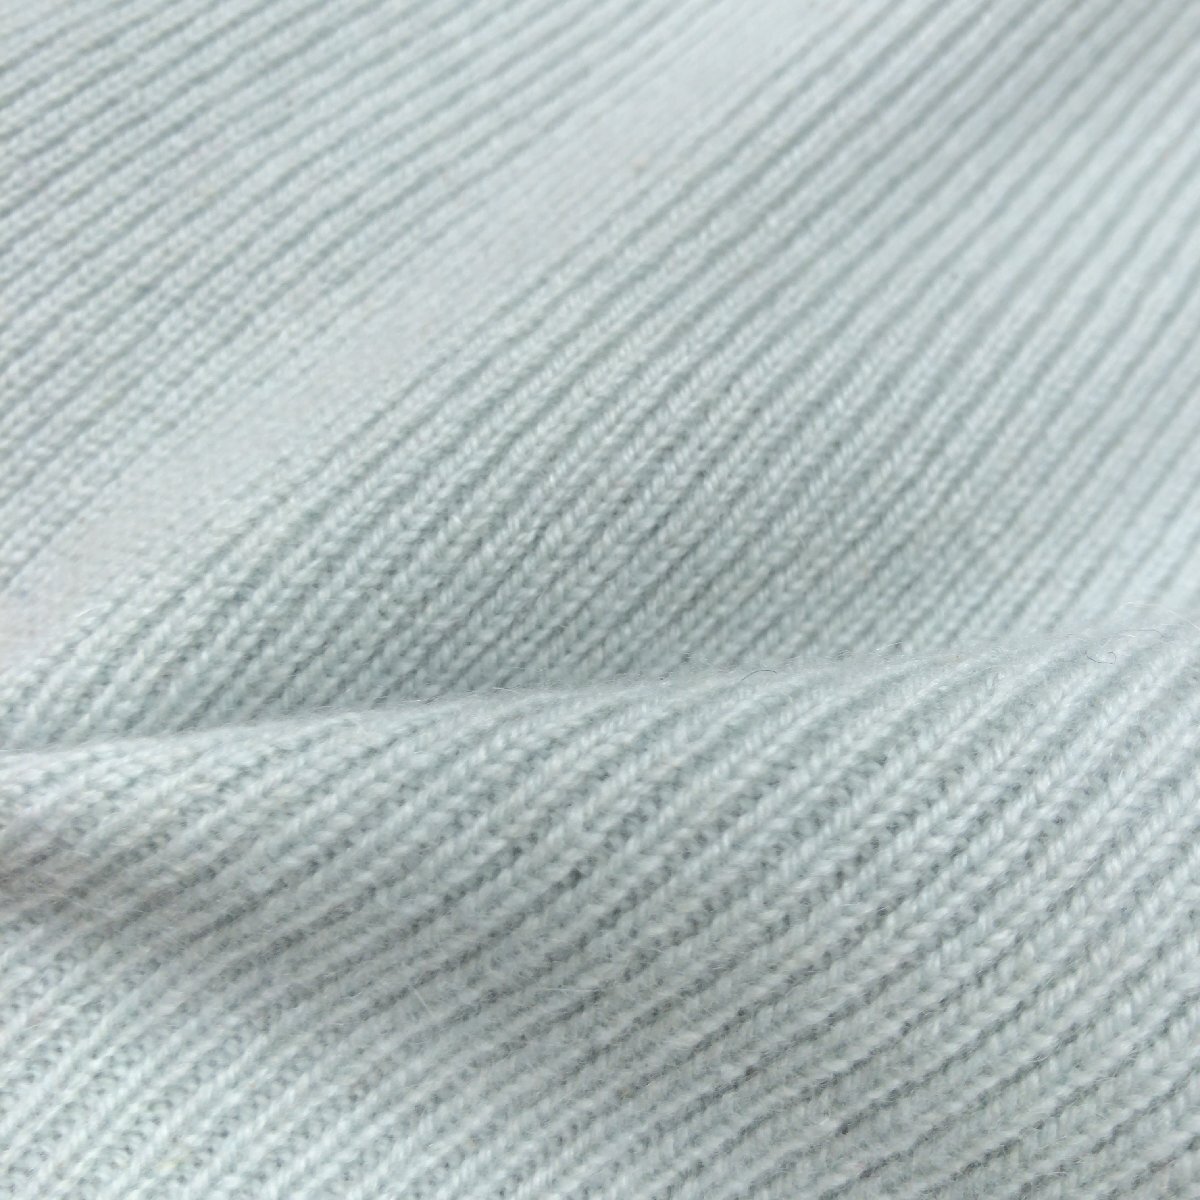 ●Cashmere cardigan《繊維の宝石》上質 カシミヤ100% リブニット カーディガン L相当 グリーン系 羽織り レディース 女性用 カシミア_画像6